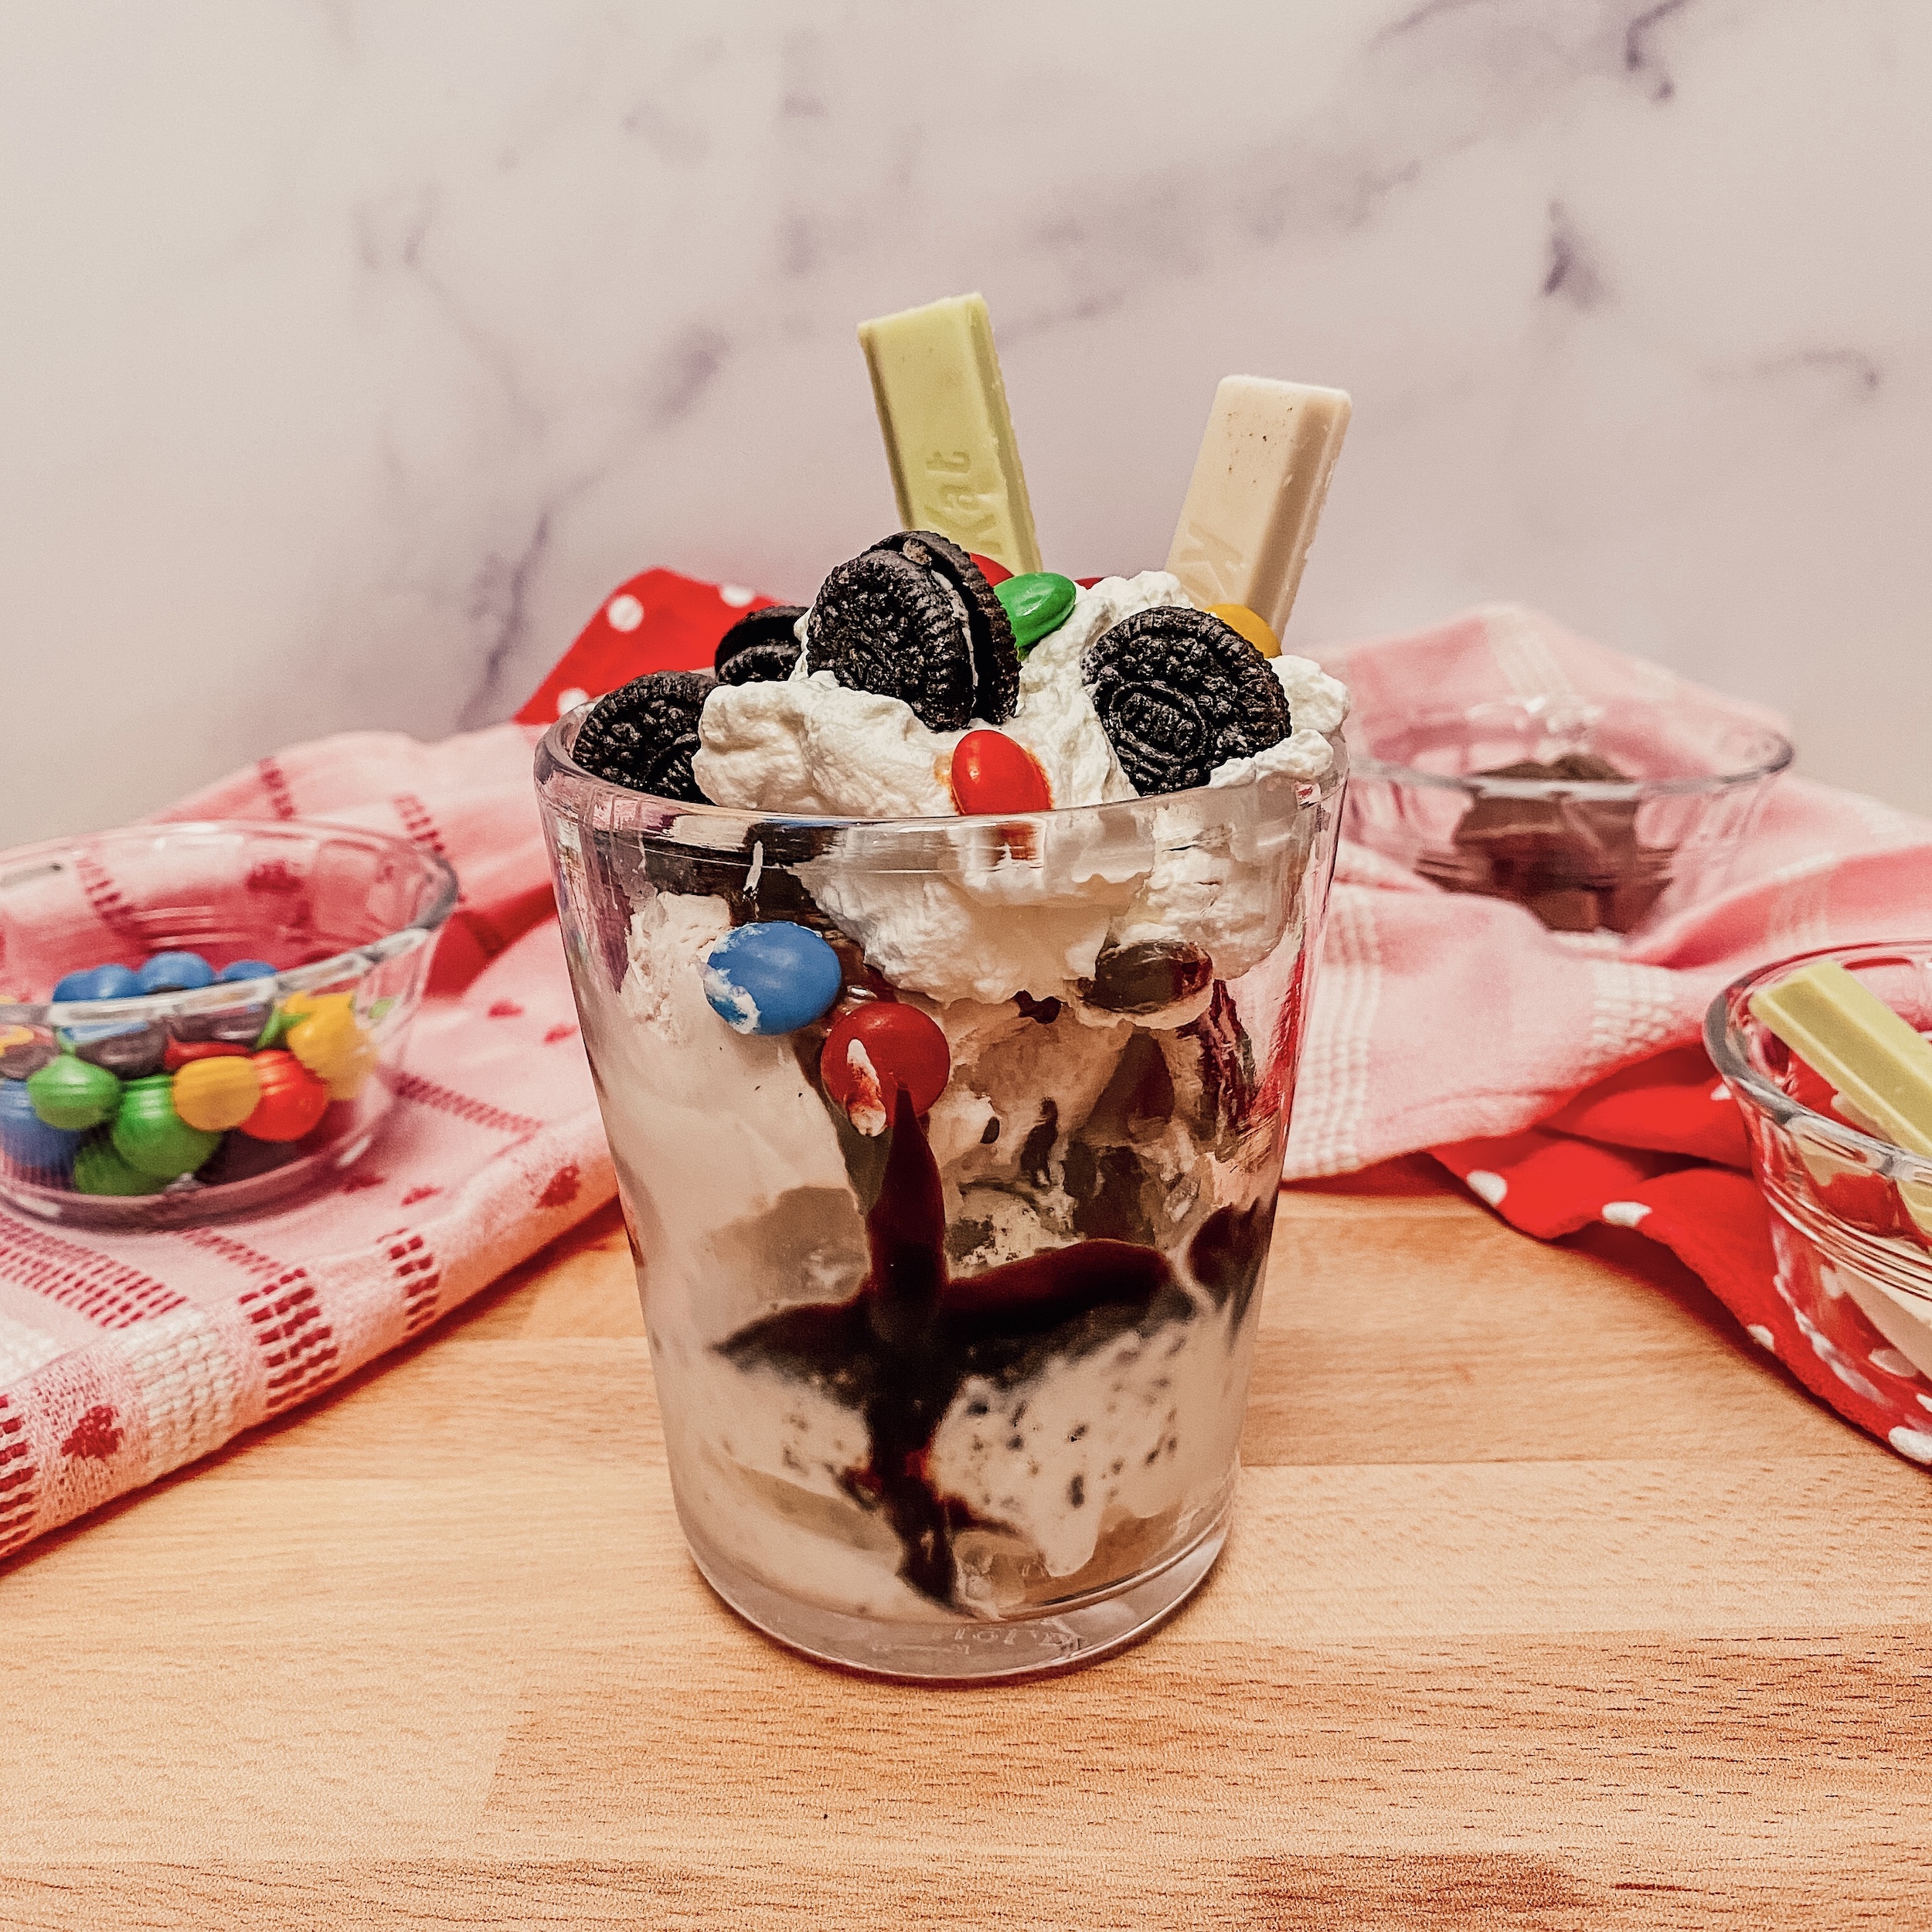 Vanellope's Sugar Rush Sundae (Ice cream sundae with oreo cookies, chocolate sauce, whipped cream, and candies)